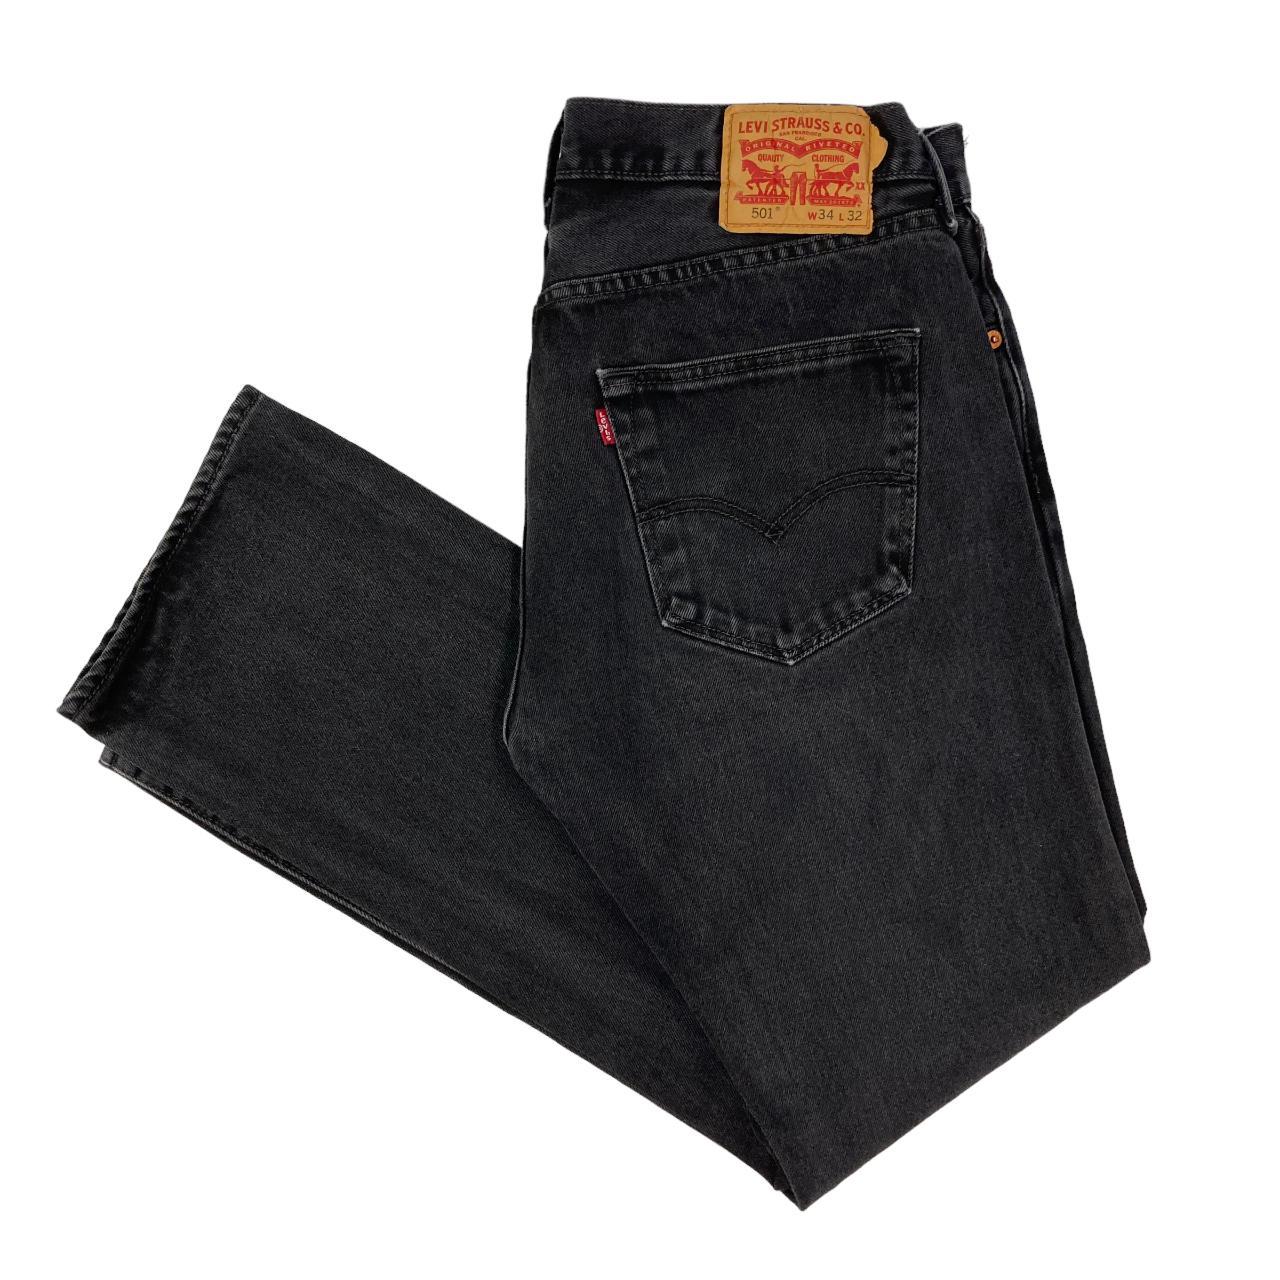 Levi's 501 Jeans Vintage Black 32W 31L Regular... - Depop